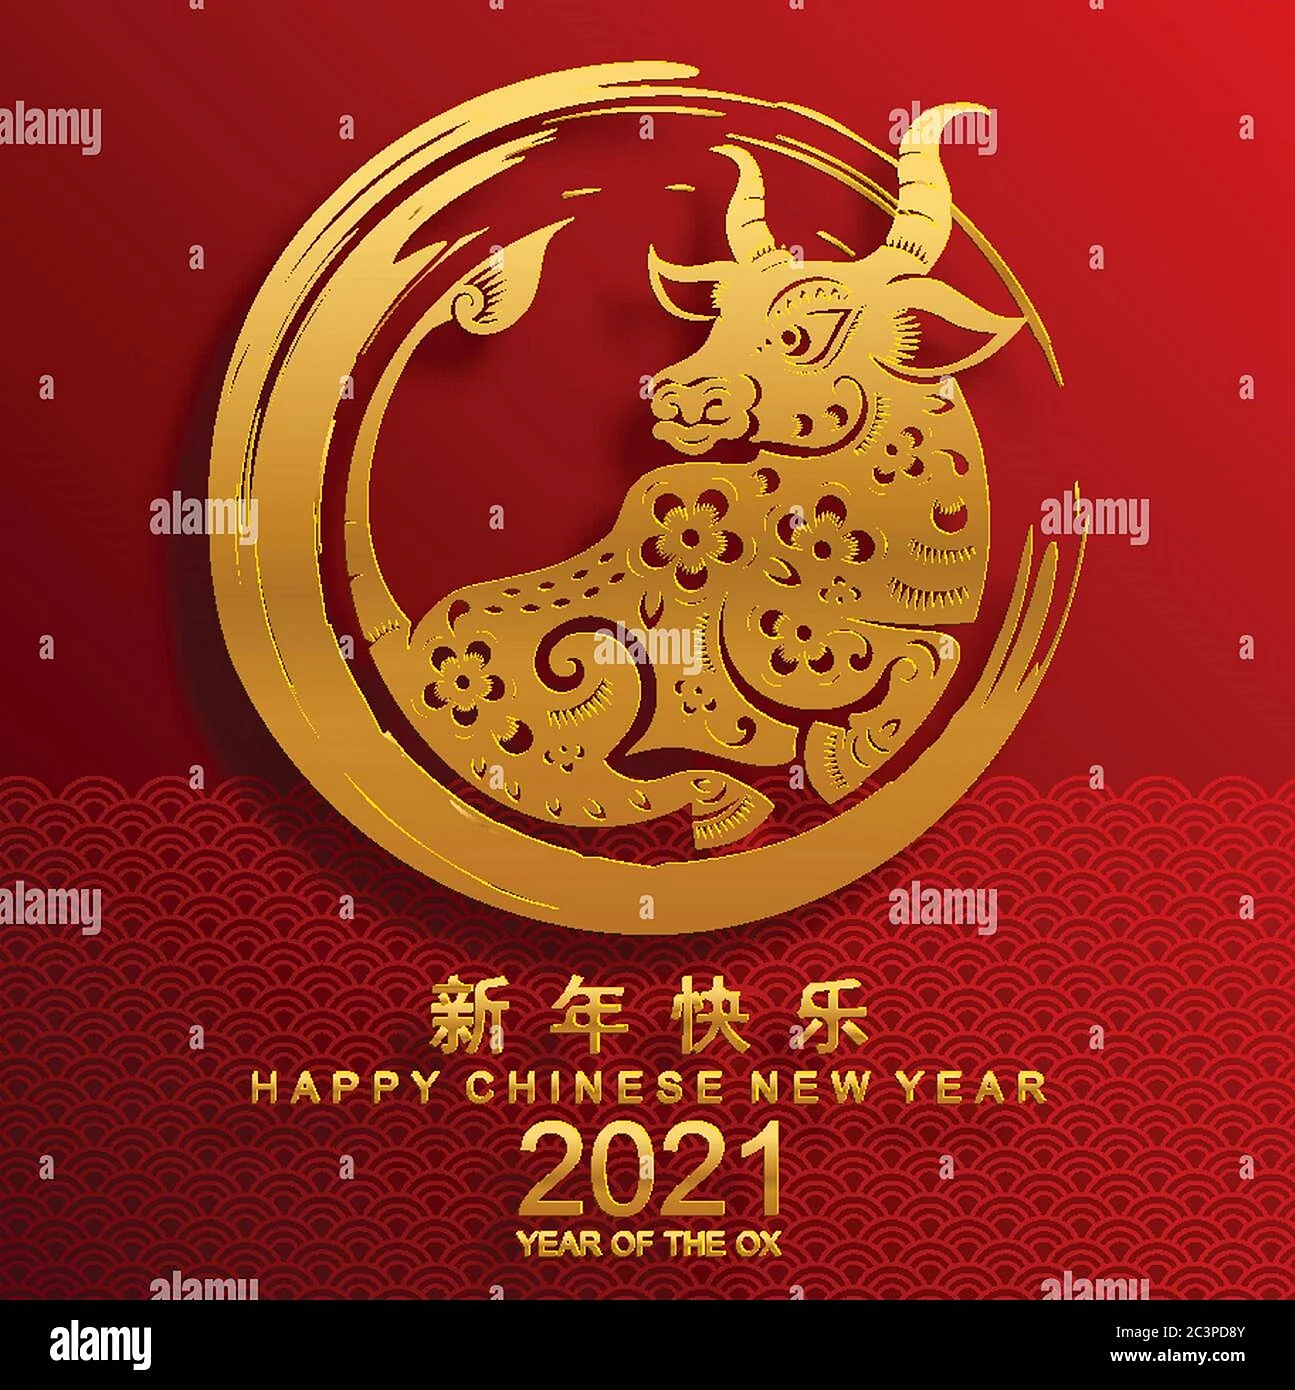 Символ китайского нового года 2021